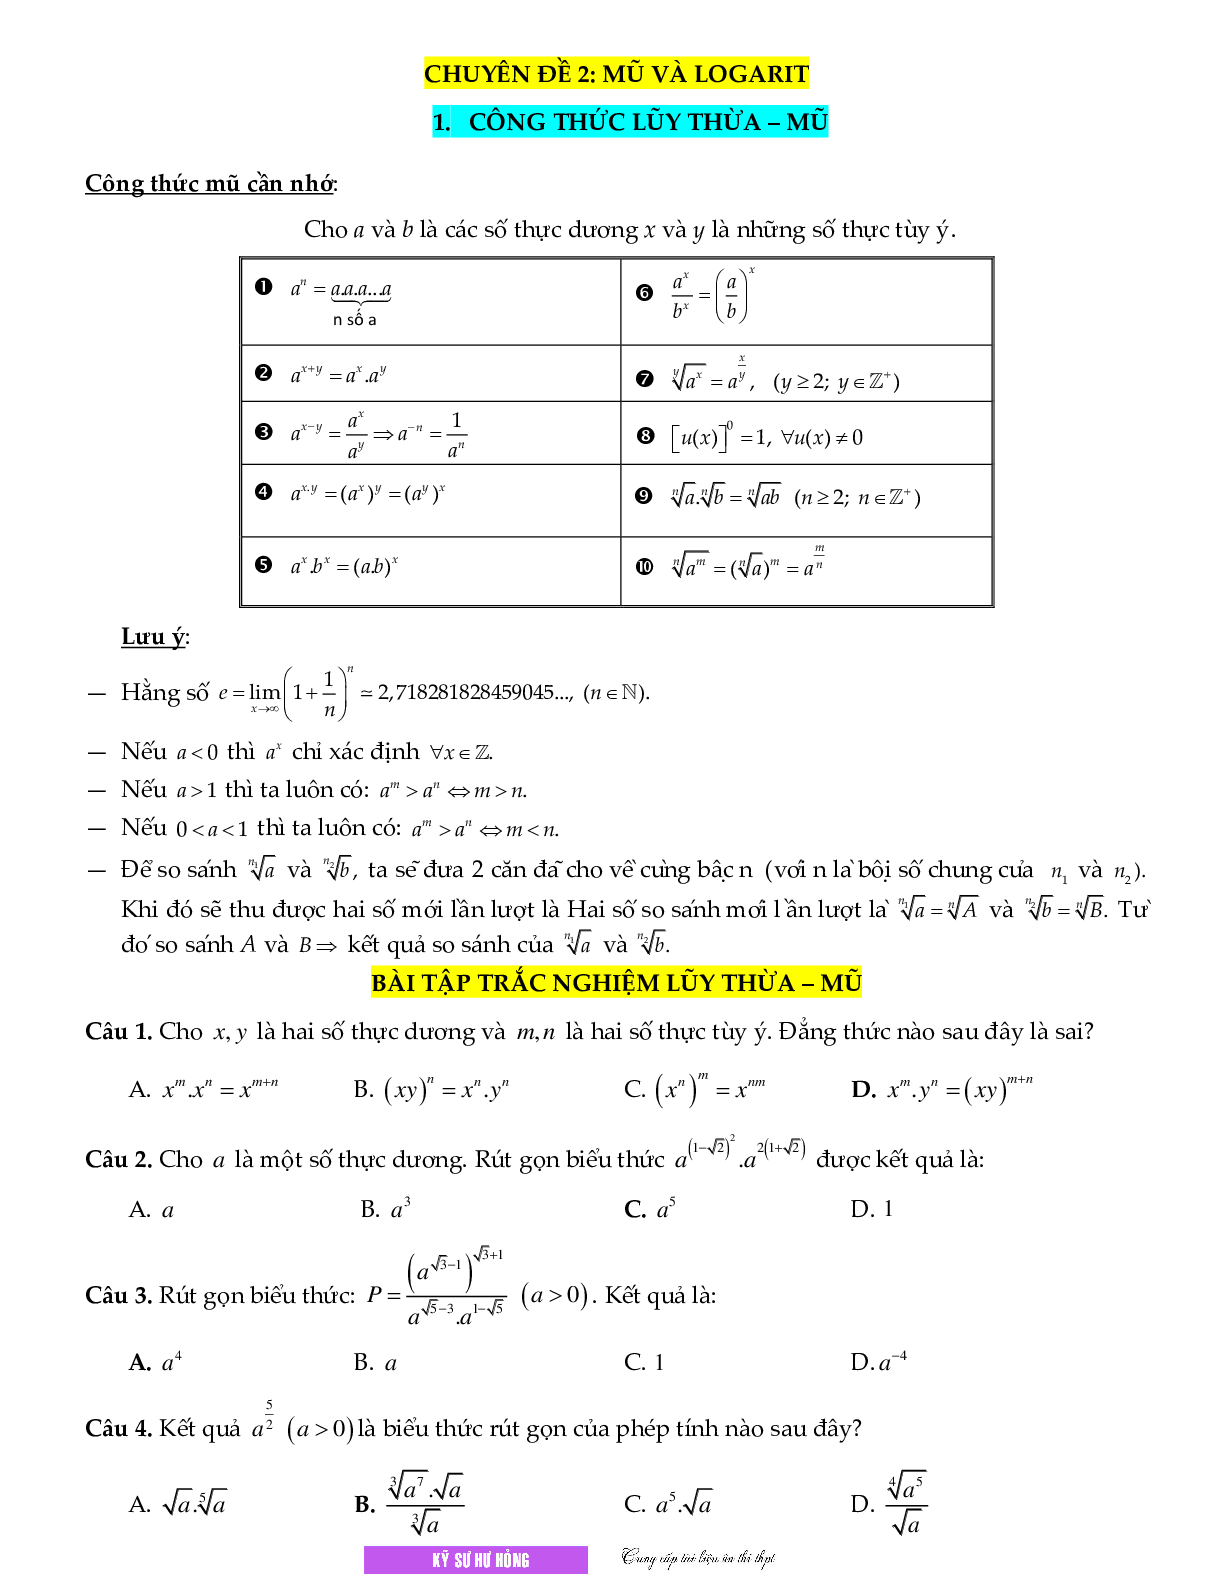 Chuyên đề Mũ - logarit môn Toán lớp 12 (trang 1)